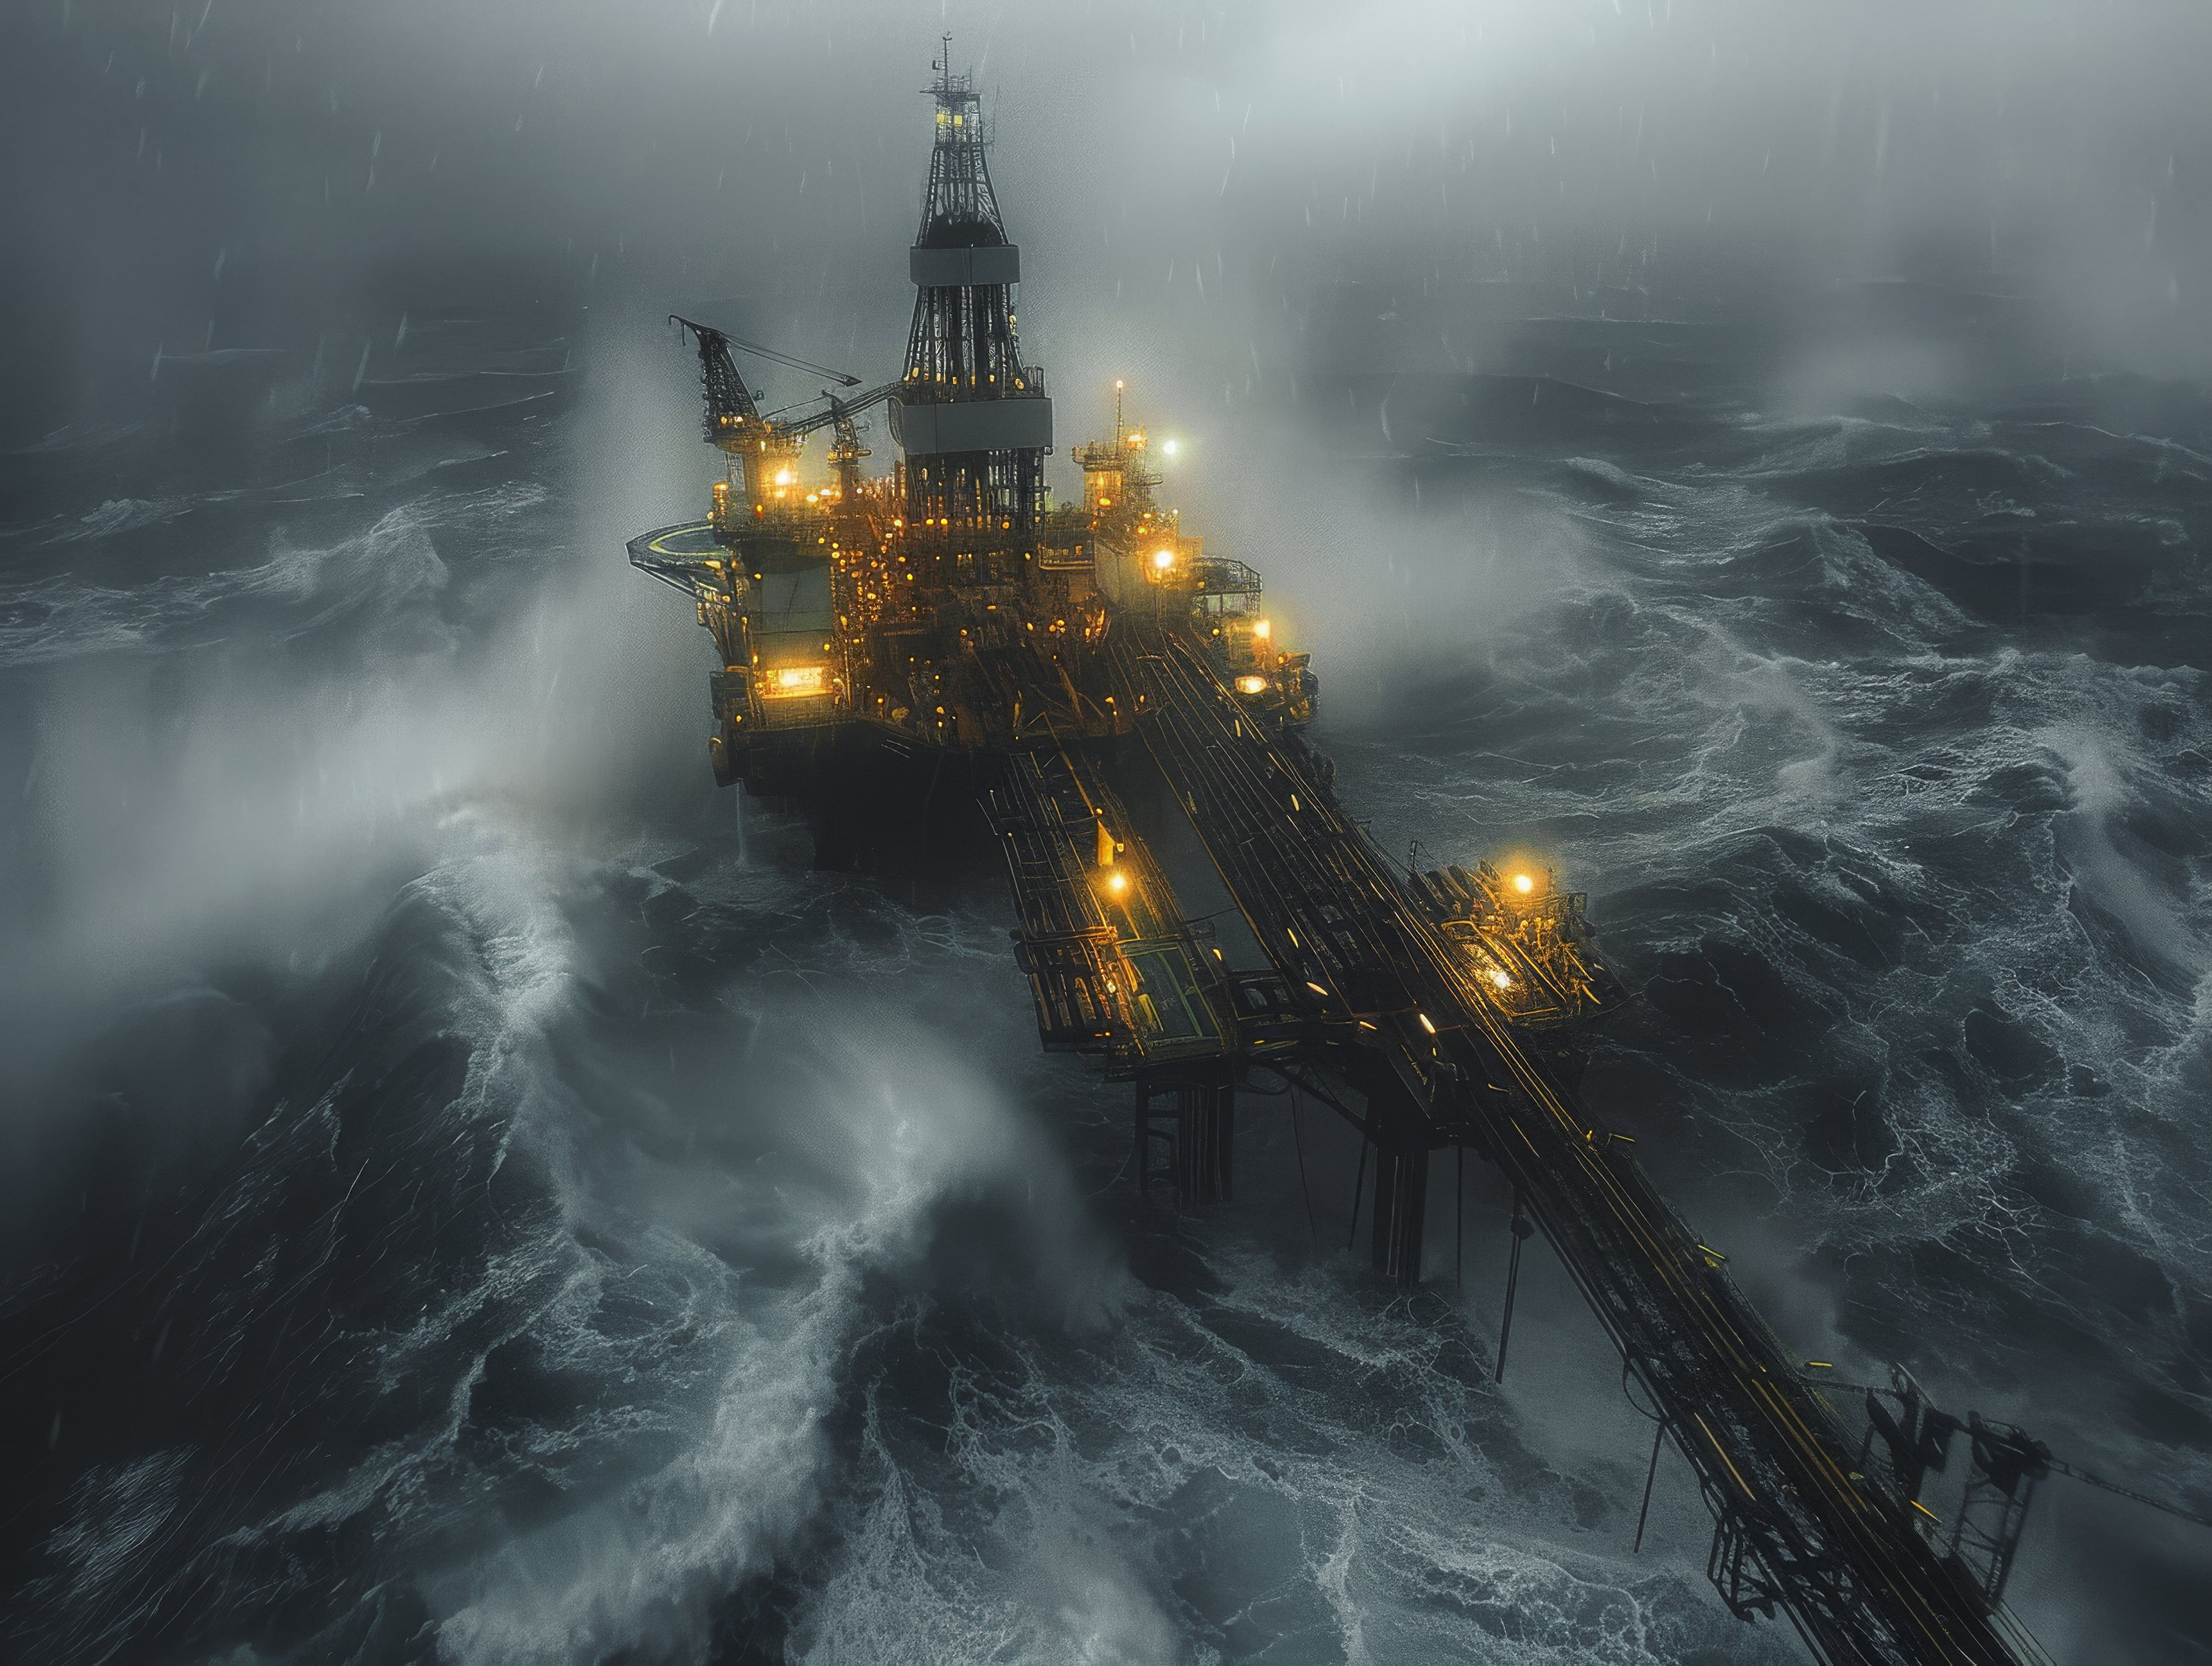 The Oil rigger's tartan North Sea Oil